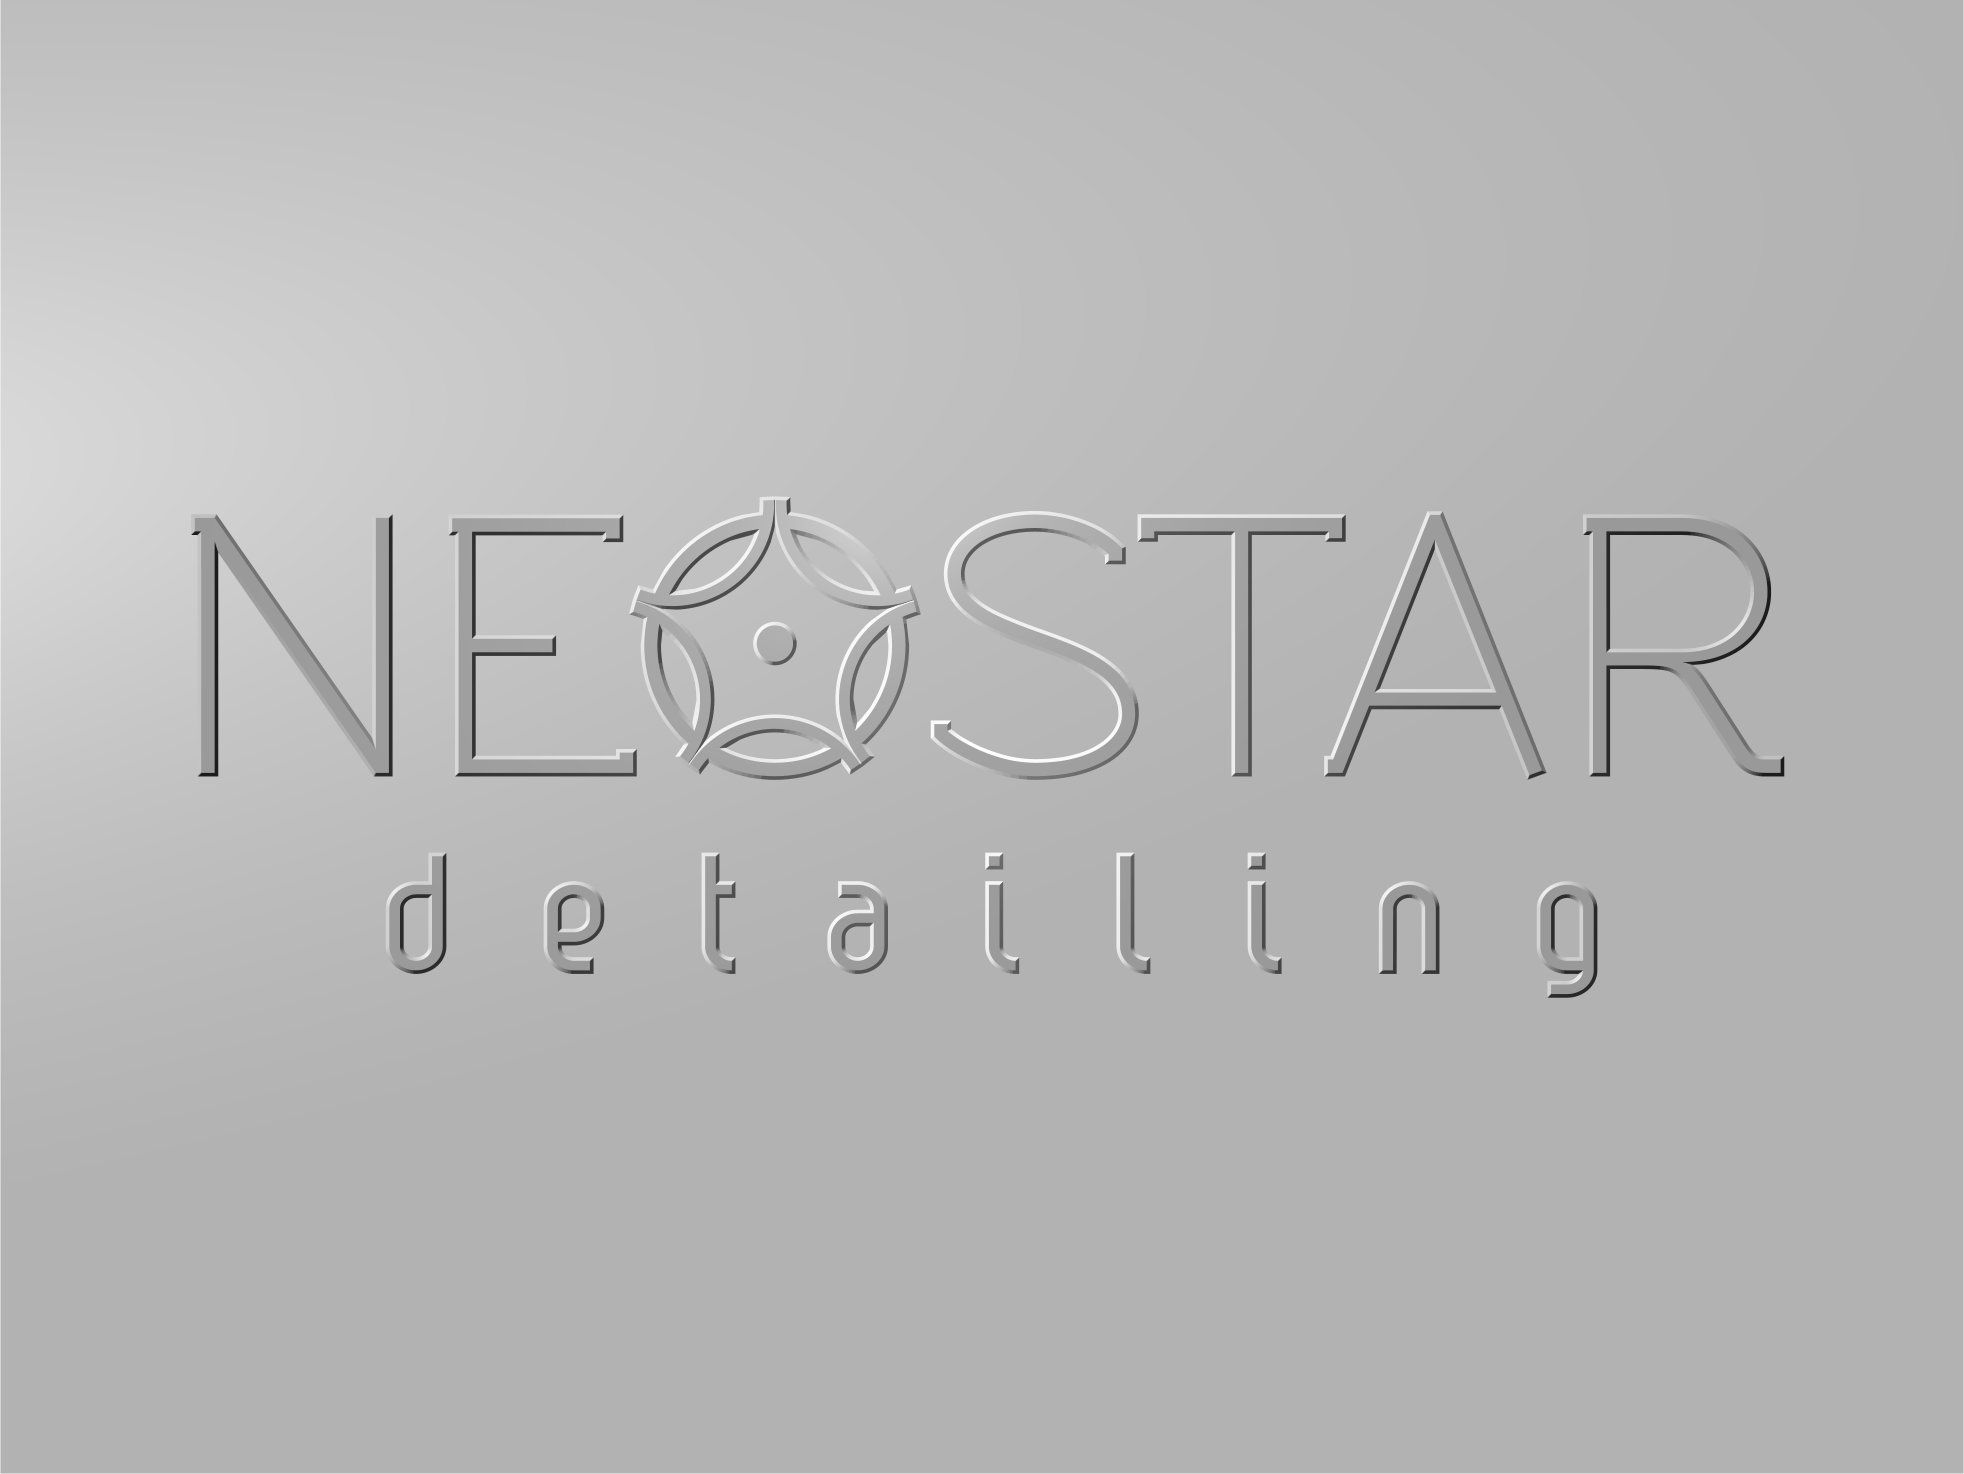 Логотип для Neostar Detailing - дизайнер antan222